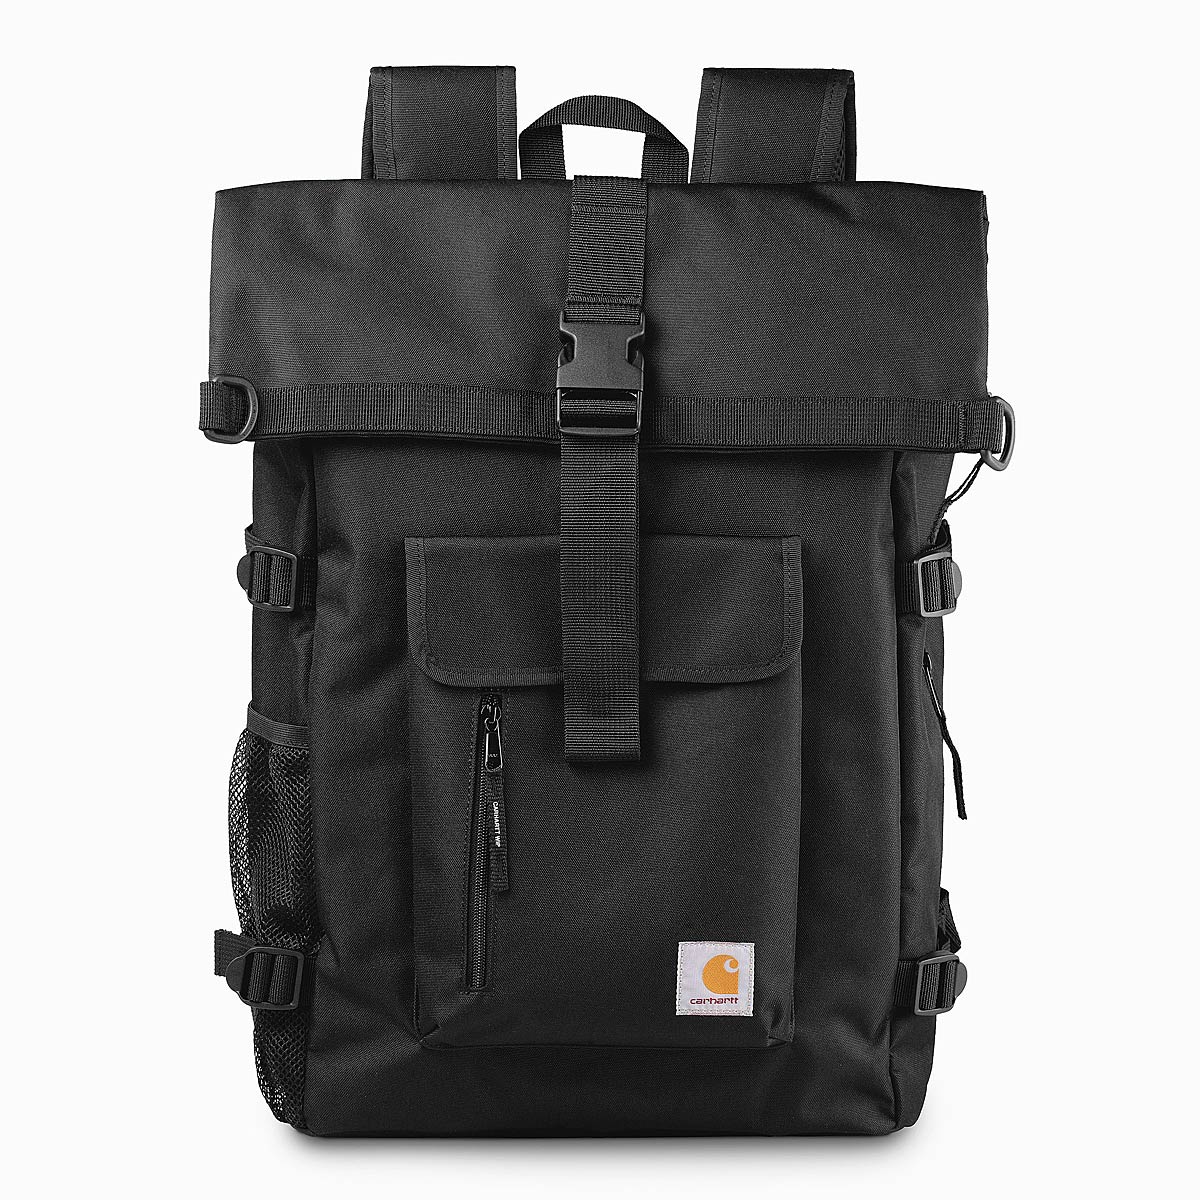 Carhartt Wip Philis Backpack, Black